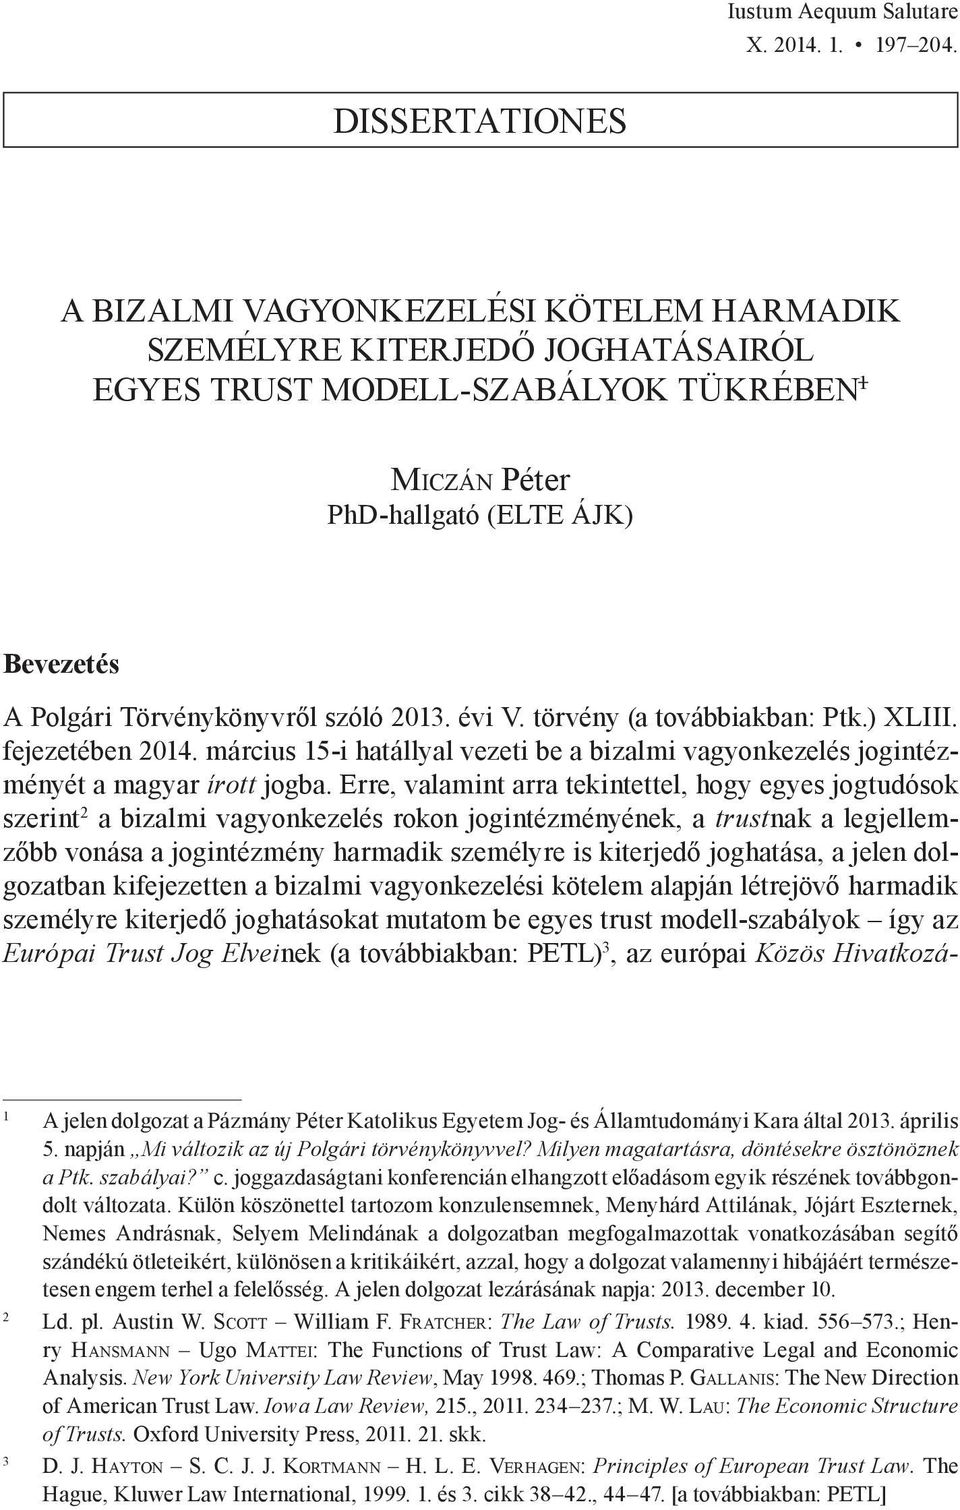 2013. évi V. törvény (a továbbiakban: Ptk.) XLIII. fejezetében 2014. március 15-i hatállyal vezeti be a bizalmi vagyonkezelés jogintézményét a magyar írott jogba.